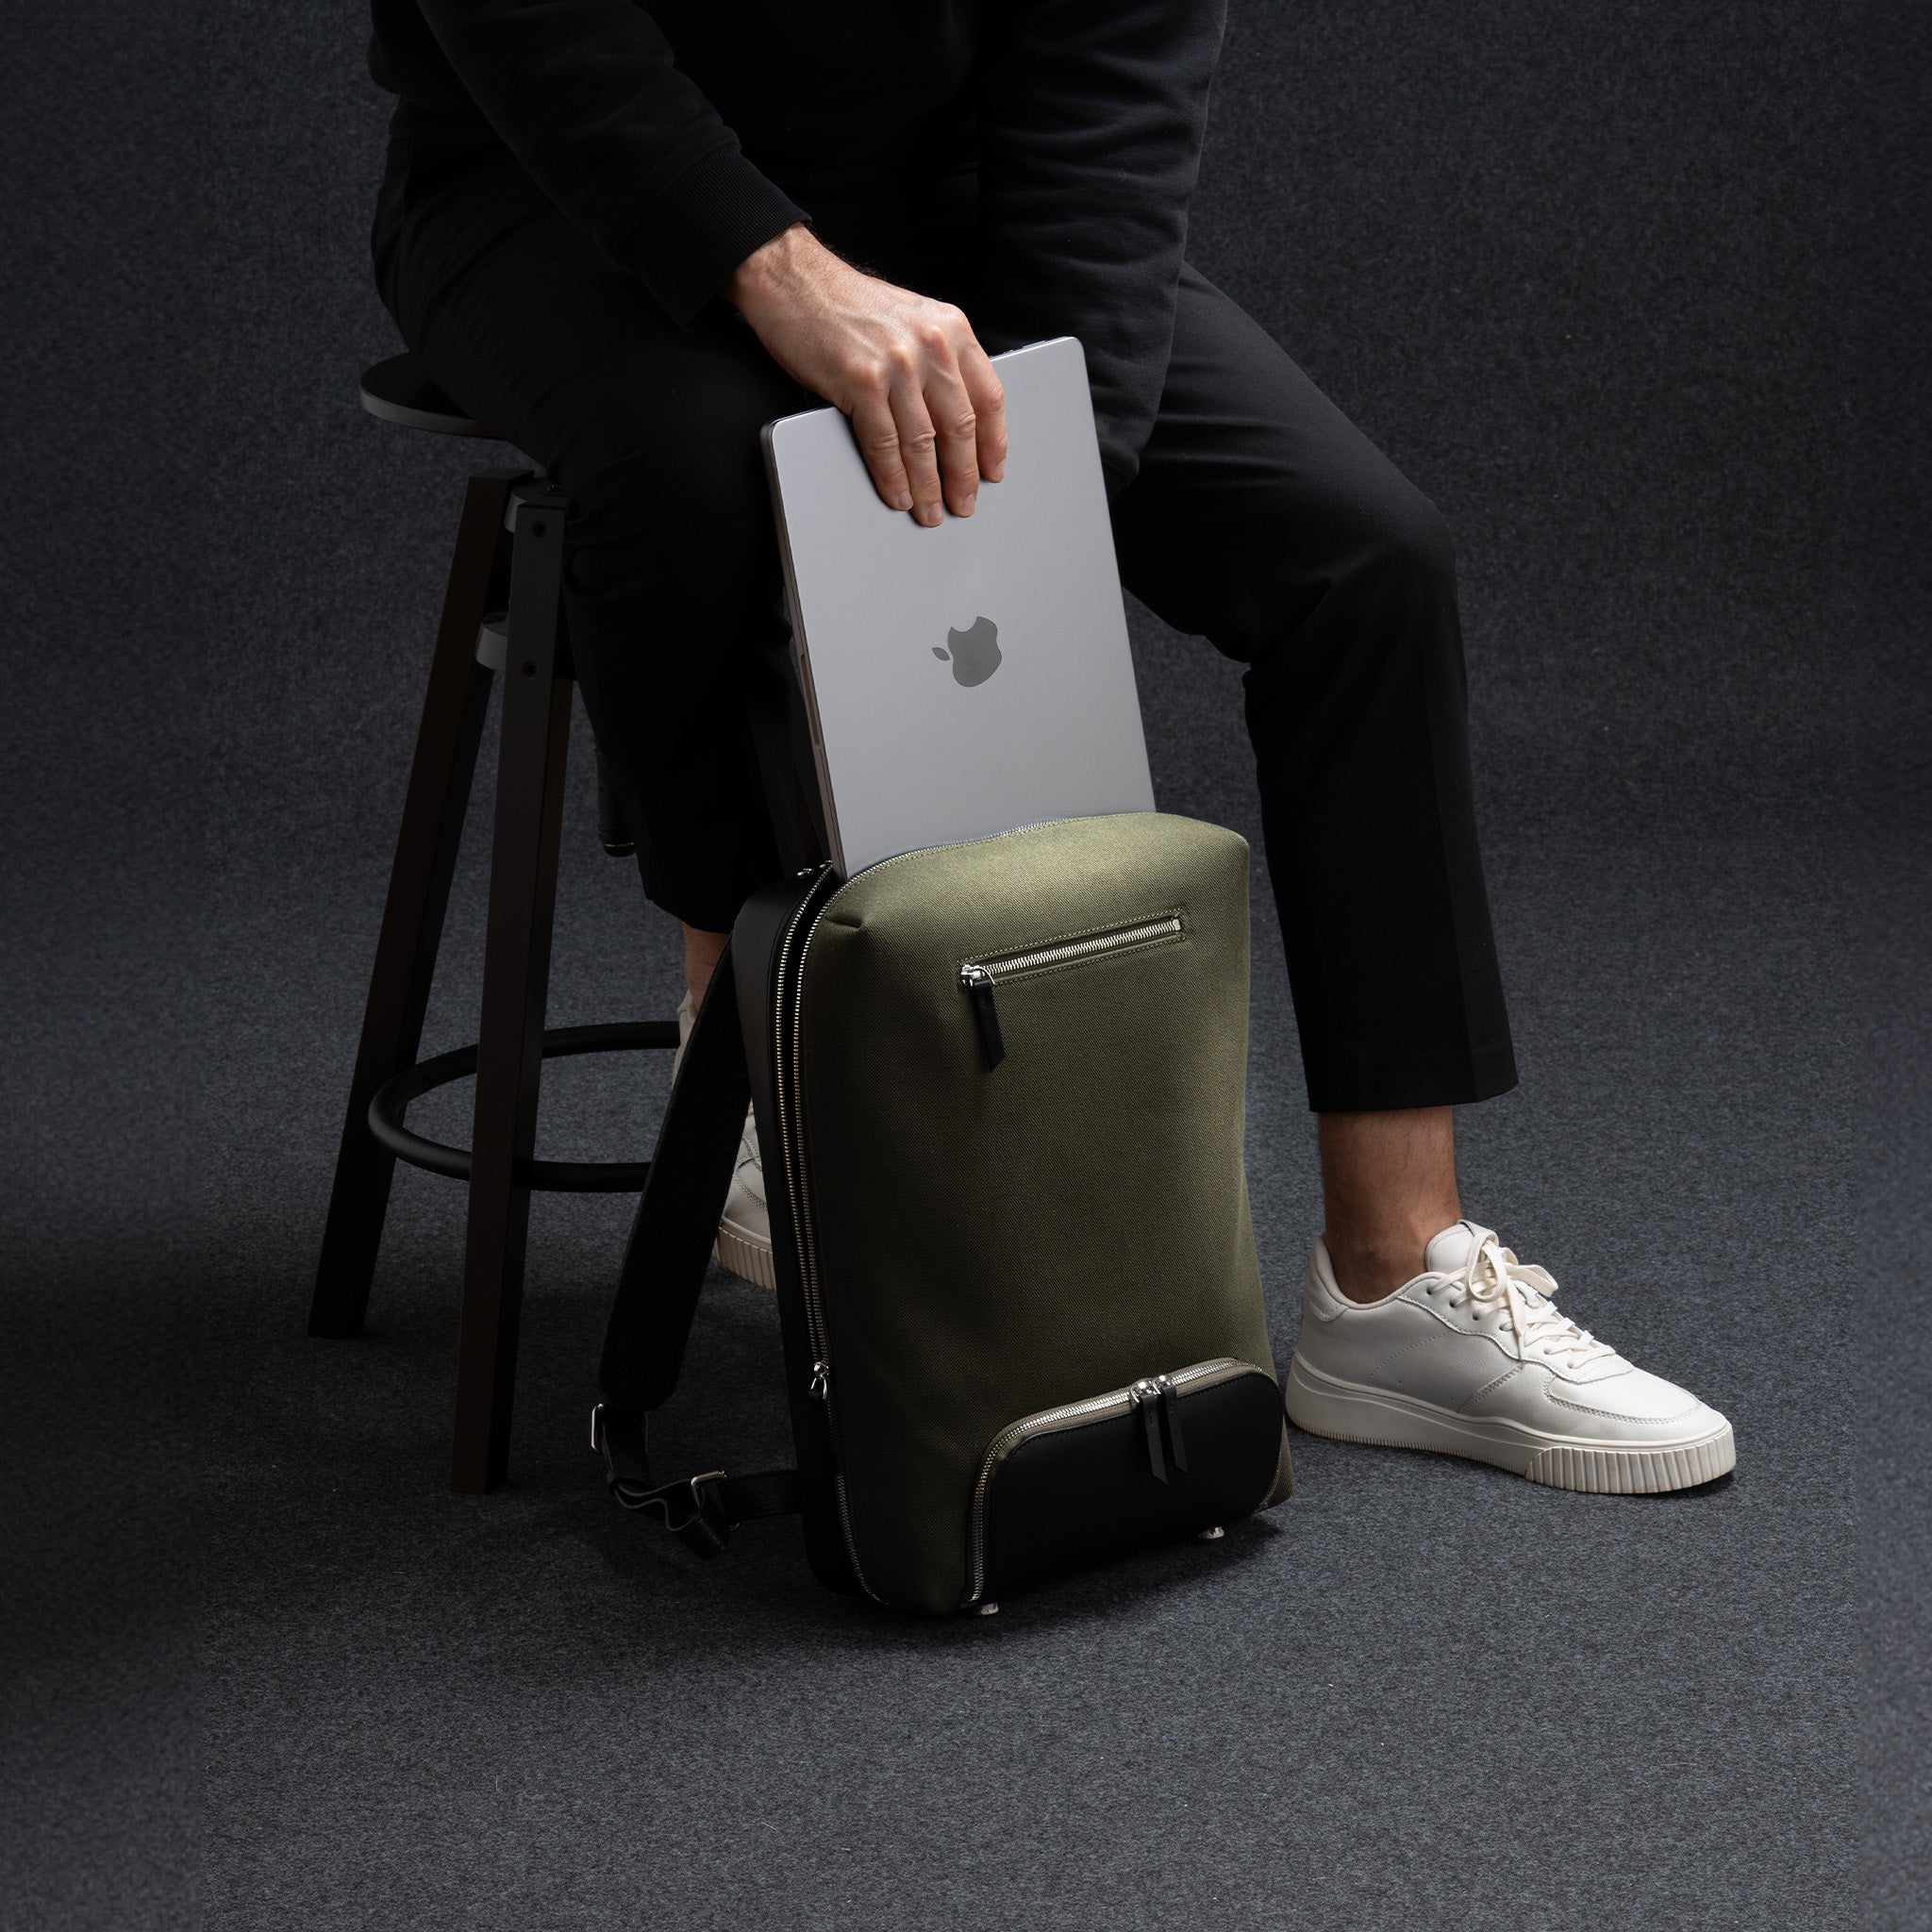 Sac à dos travail homme en toile et cuir, conçu pour transporter un ordinateur portable en toute sécurité. Ce sac à dos offre un design élégant et une grande capacité de rangement. Parfait pour les professionnels en déplacement.